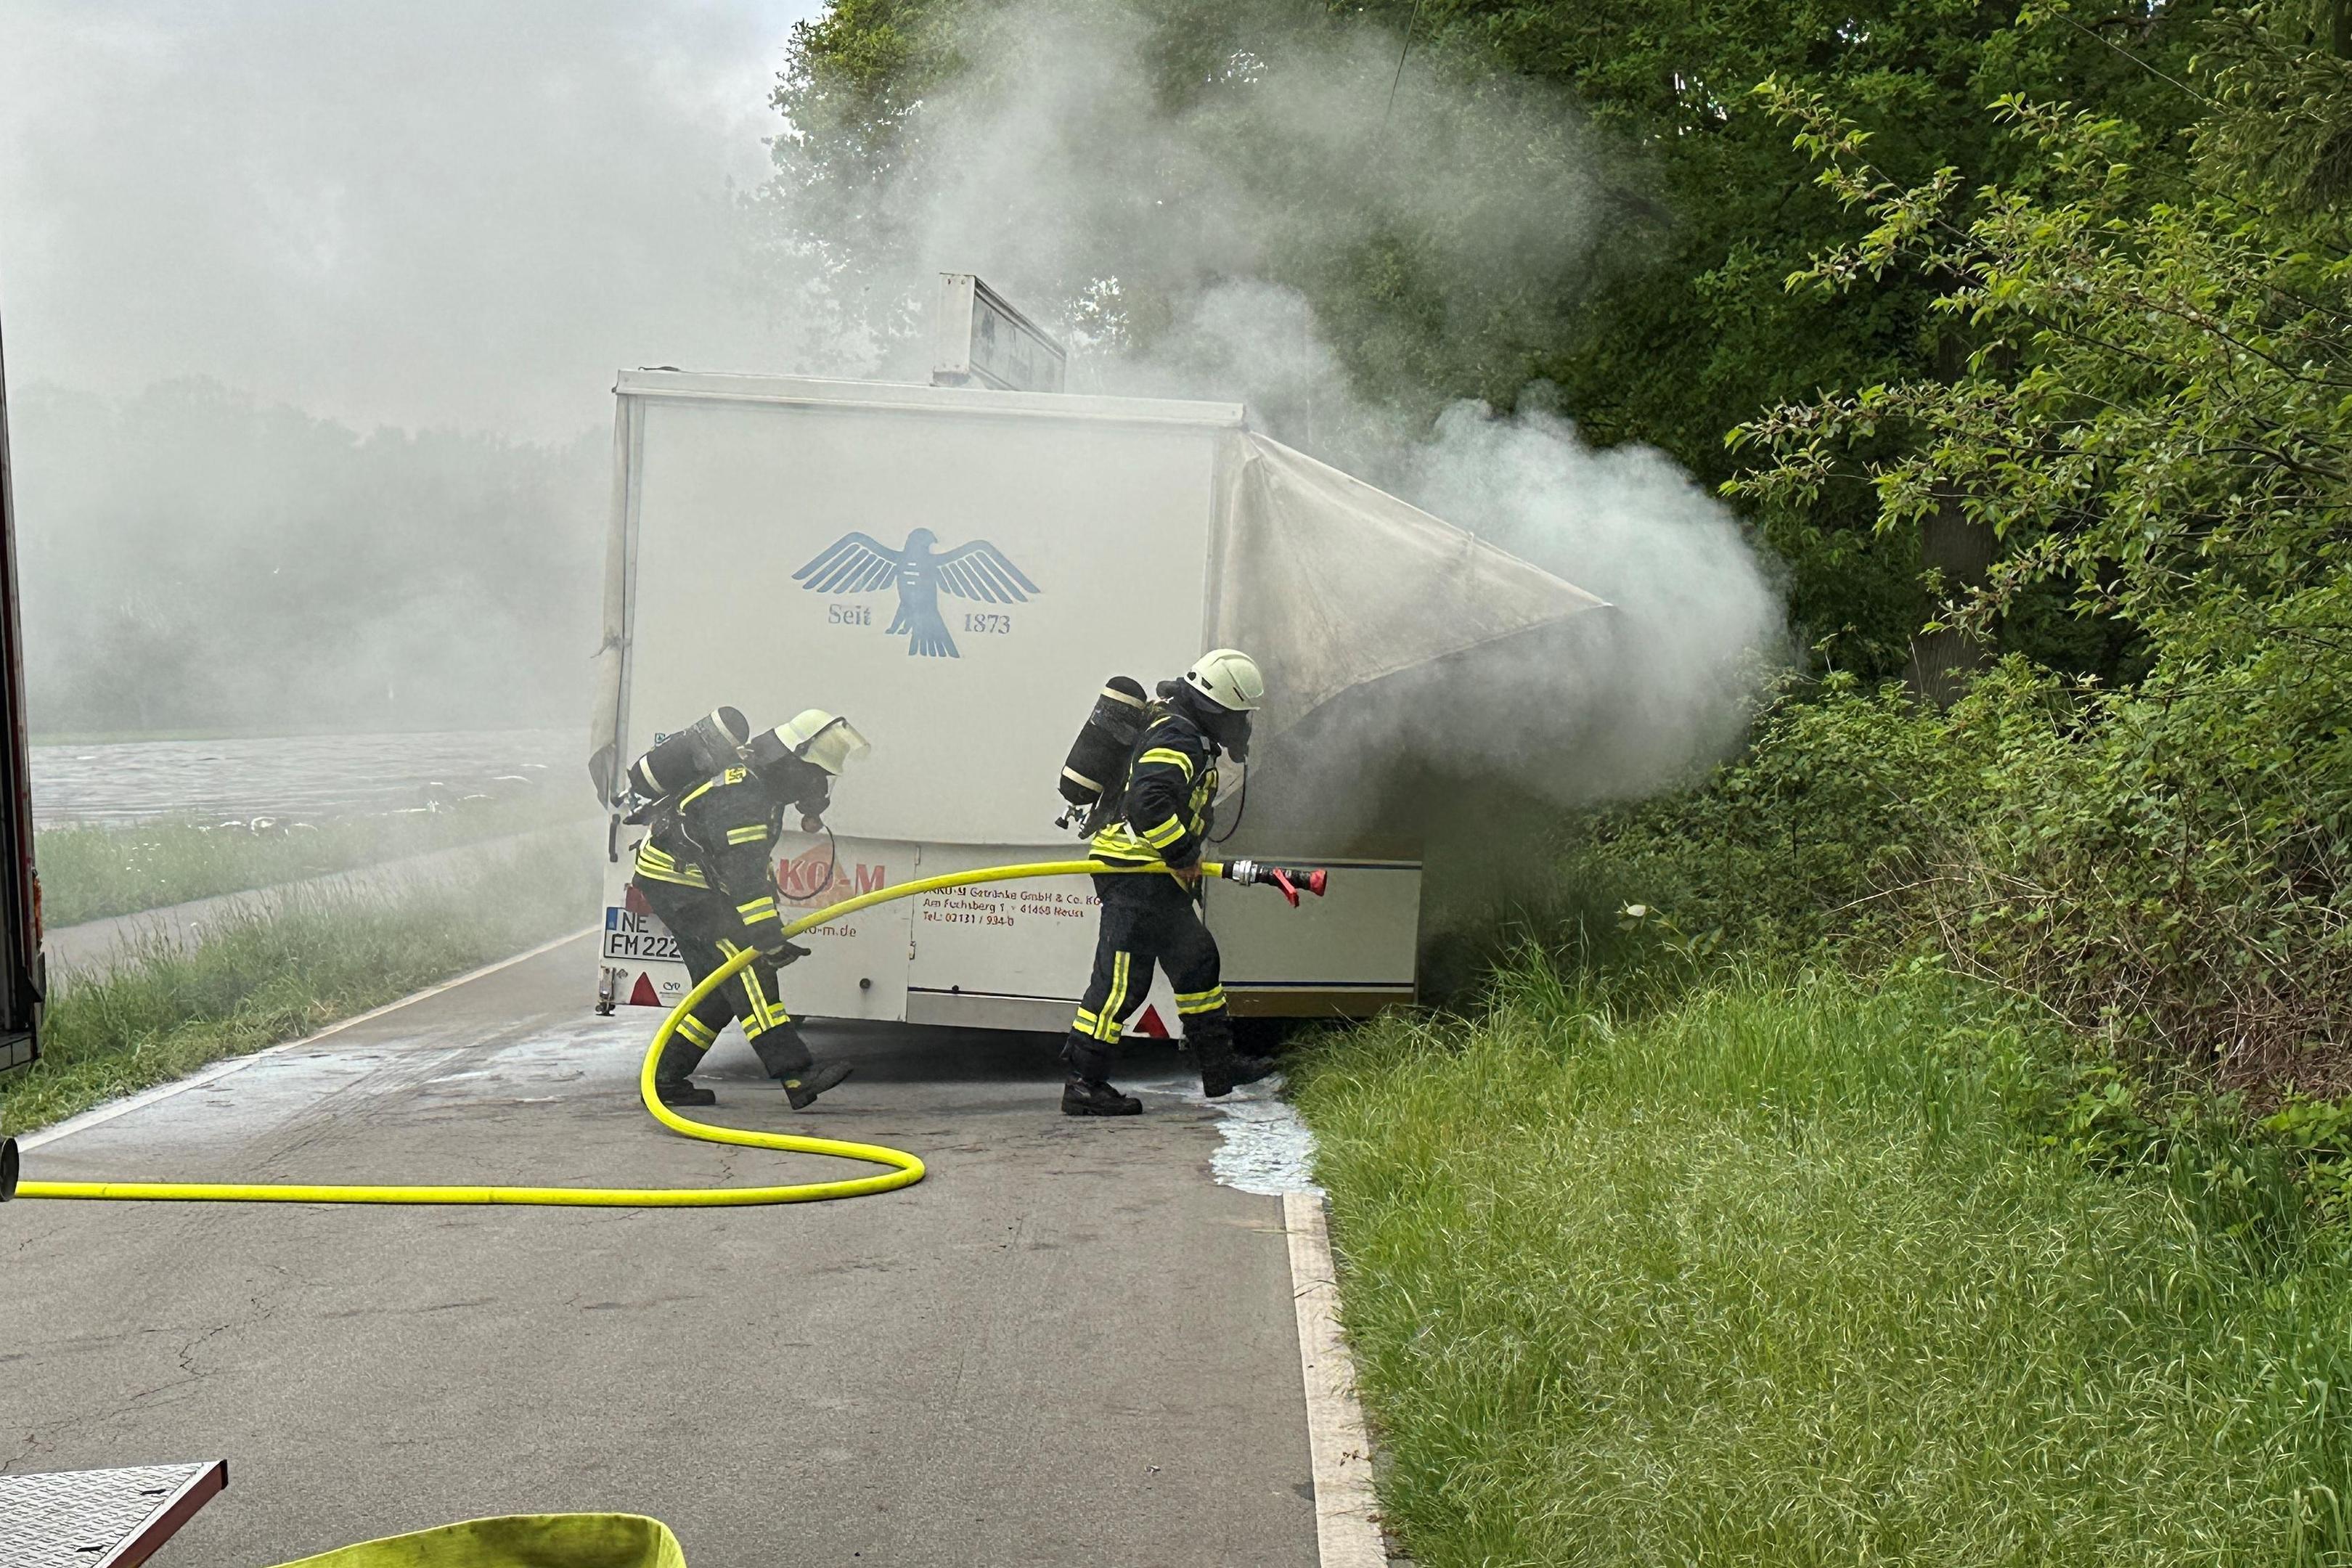 Alleine konnte der Fahrer des Lkw, der den Schankwagen gezogen hatte, den Brand nicht löschen. Die Feuerwehr rückte aus.